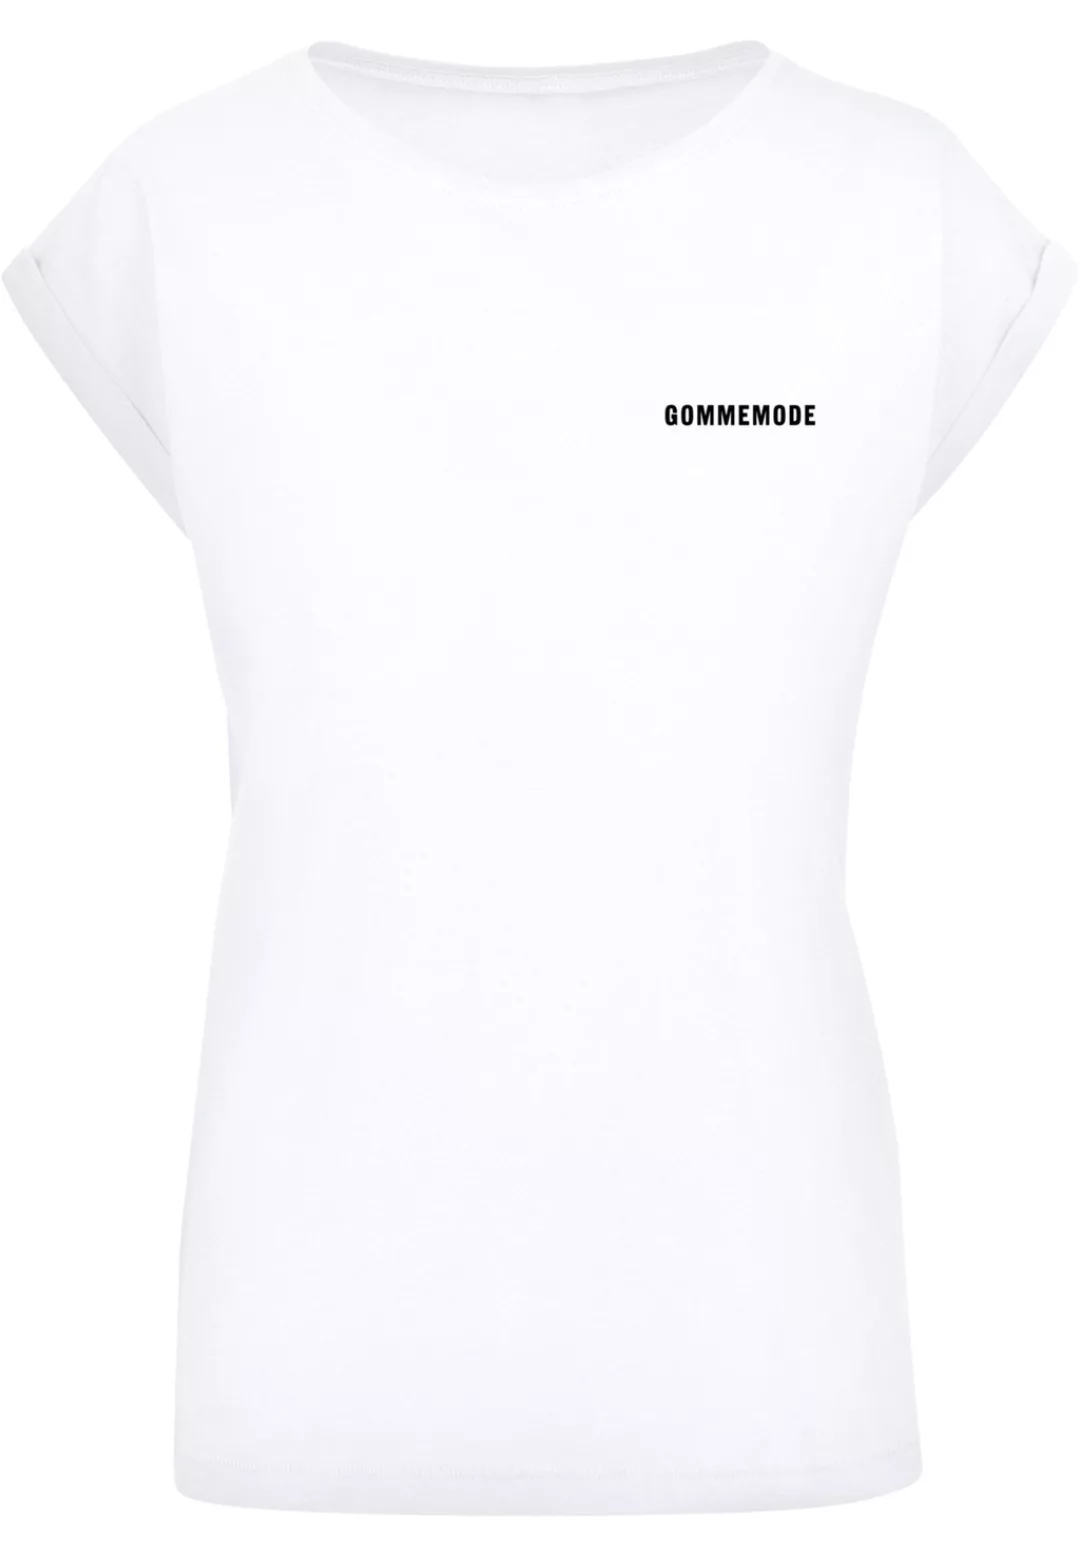 F4NT4STIC T-Shirt "Gommemode", Jugendwort 2022, slang günstig online kaufen